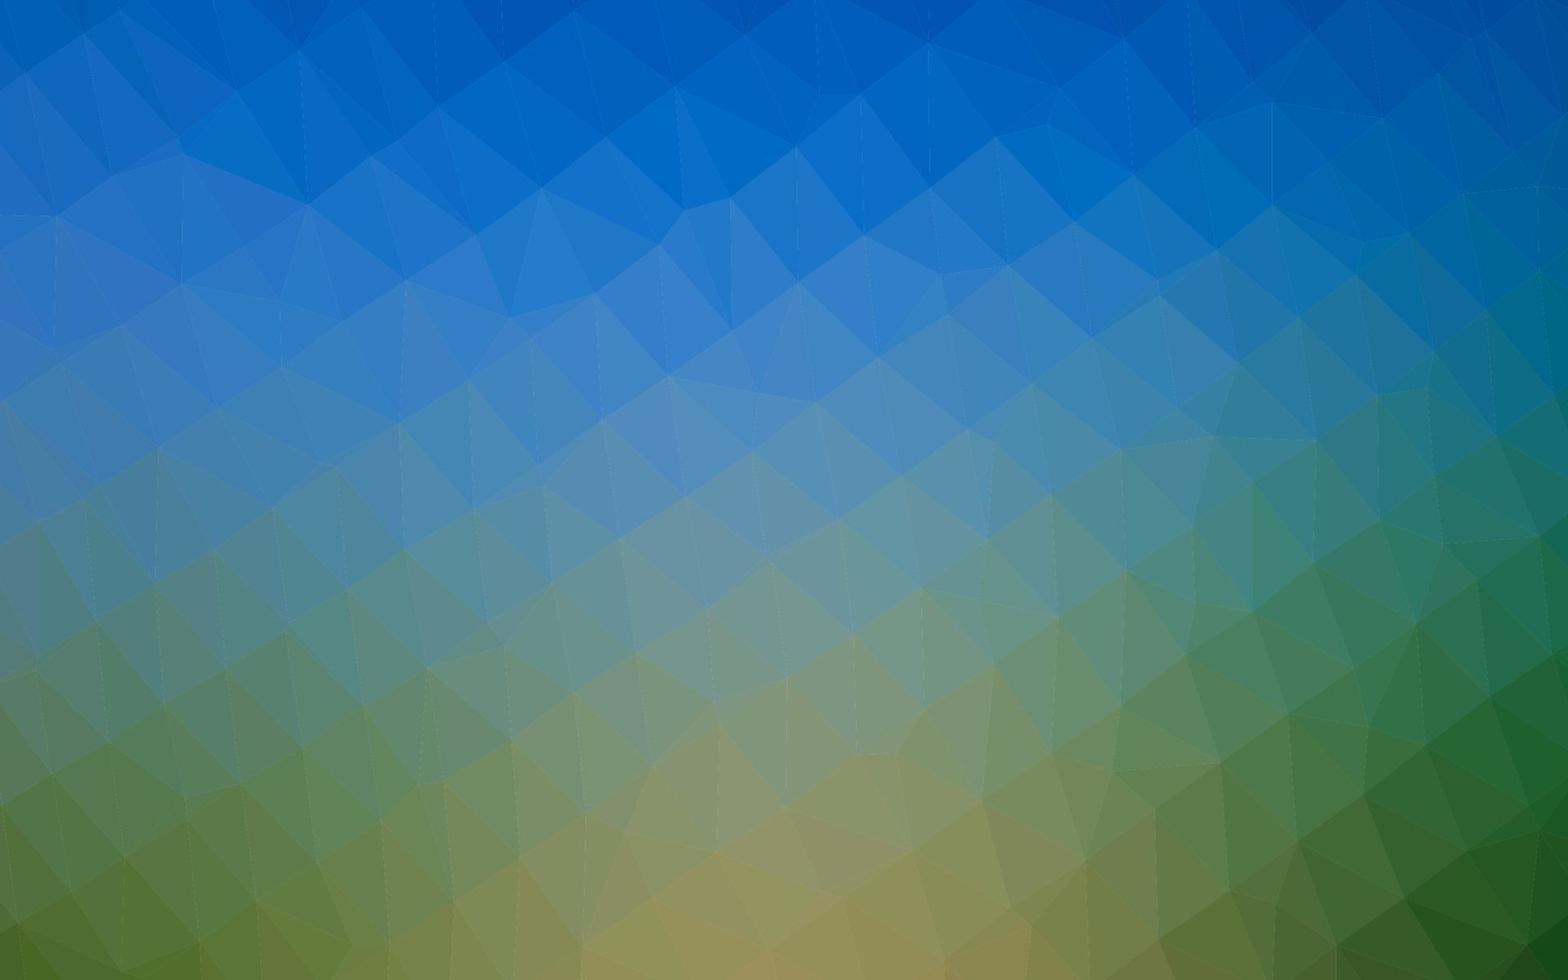 Light Blue, Green vector polygonal template.